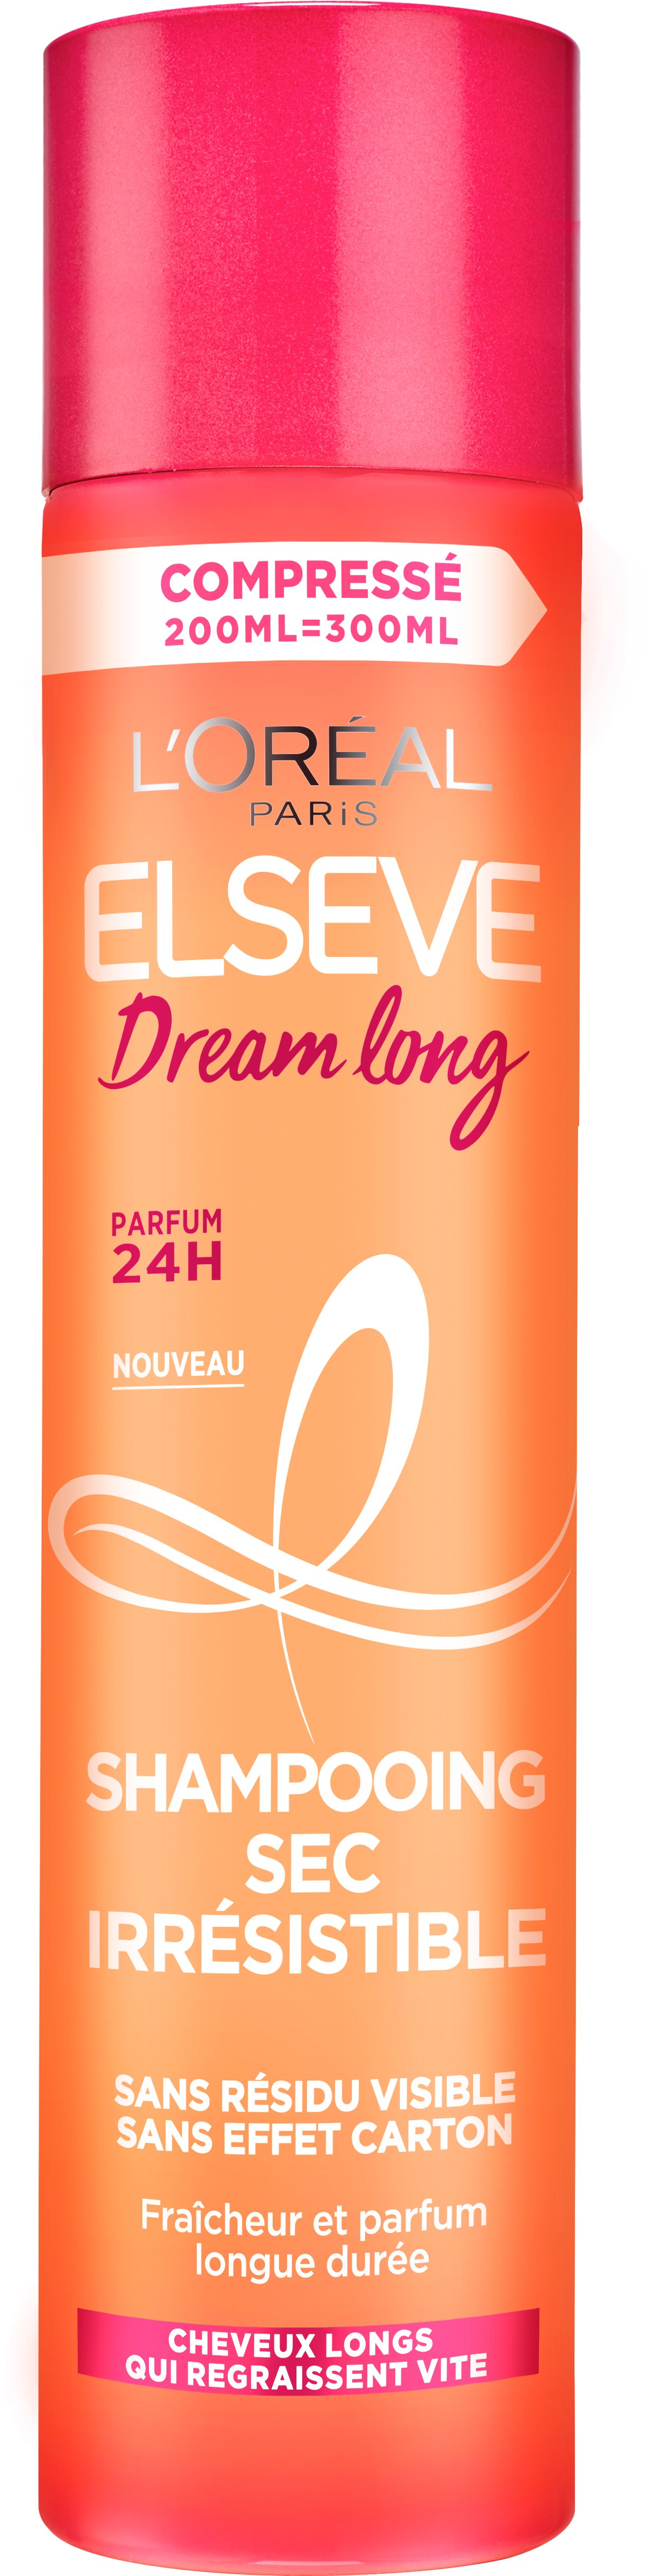 Сухой шампунь L'Oreal Paris Dream Long для длинных склонных к жирности волос, 200 мл - фото 1